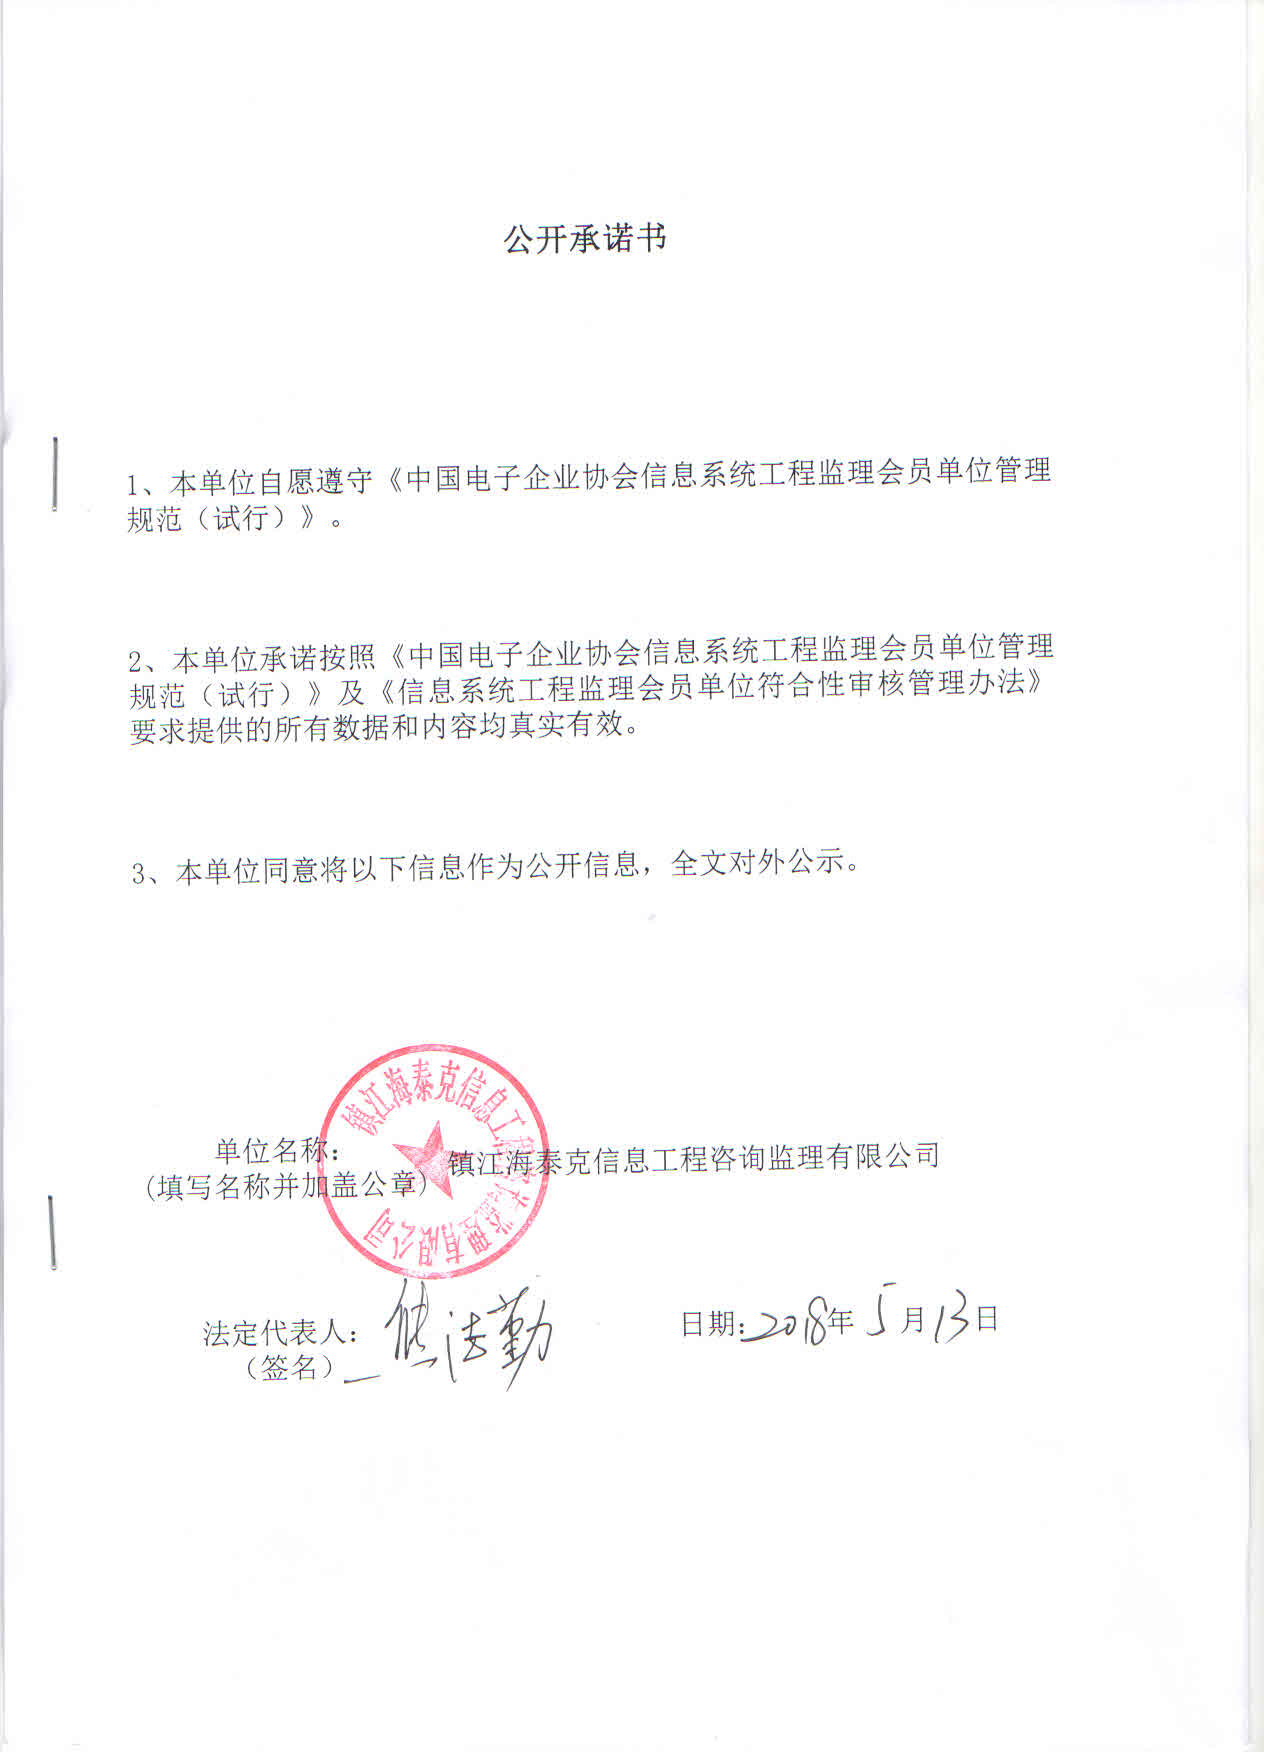 镇江海泰克信息工程咨询监理有限公司信息系统工程监理资质证书